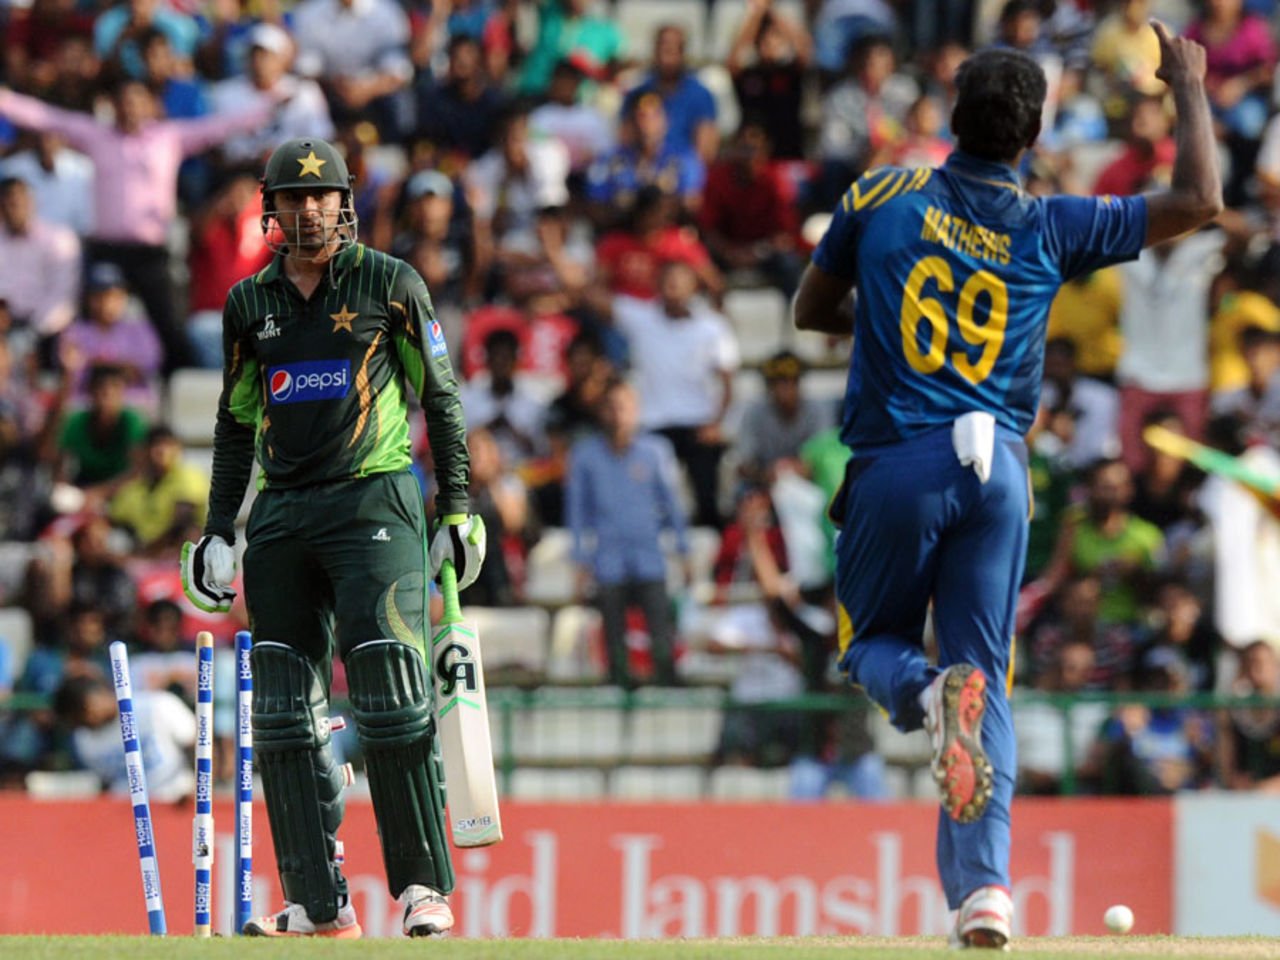 Shoaib Malik looks at Angelo Mathews after he was bowled, Sri Lanka v Pakistan, 2nd ODI, Pallekele, July 15, 2015